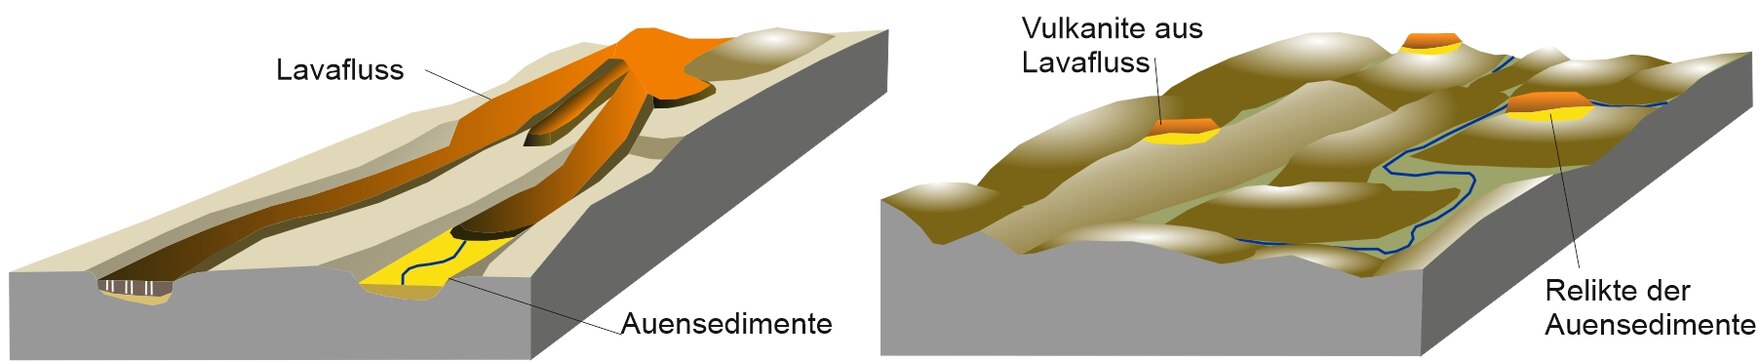 Lavaflüsse folgen häufig Tälern in der Landschaft (im Blockbild, links). Aufgrund der Festigkeit des erstarrten vulkanischen Gesteins werden sie nach Erkalten der Lava weniger erodiert als die umlagernden Gesteine, sodass aus einem Lavafluss Härtlingberge